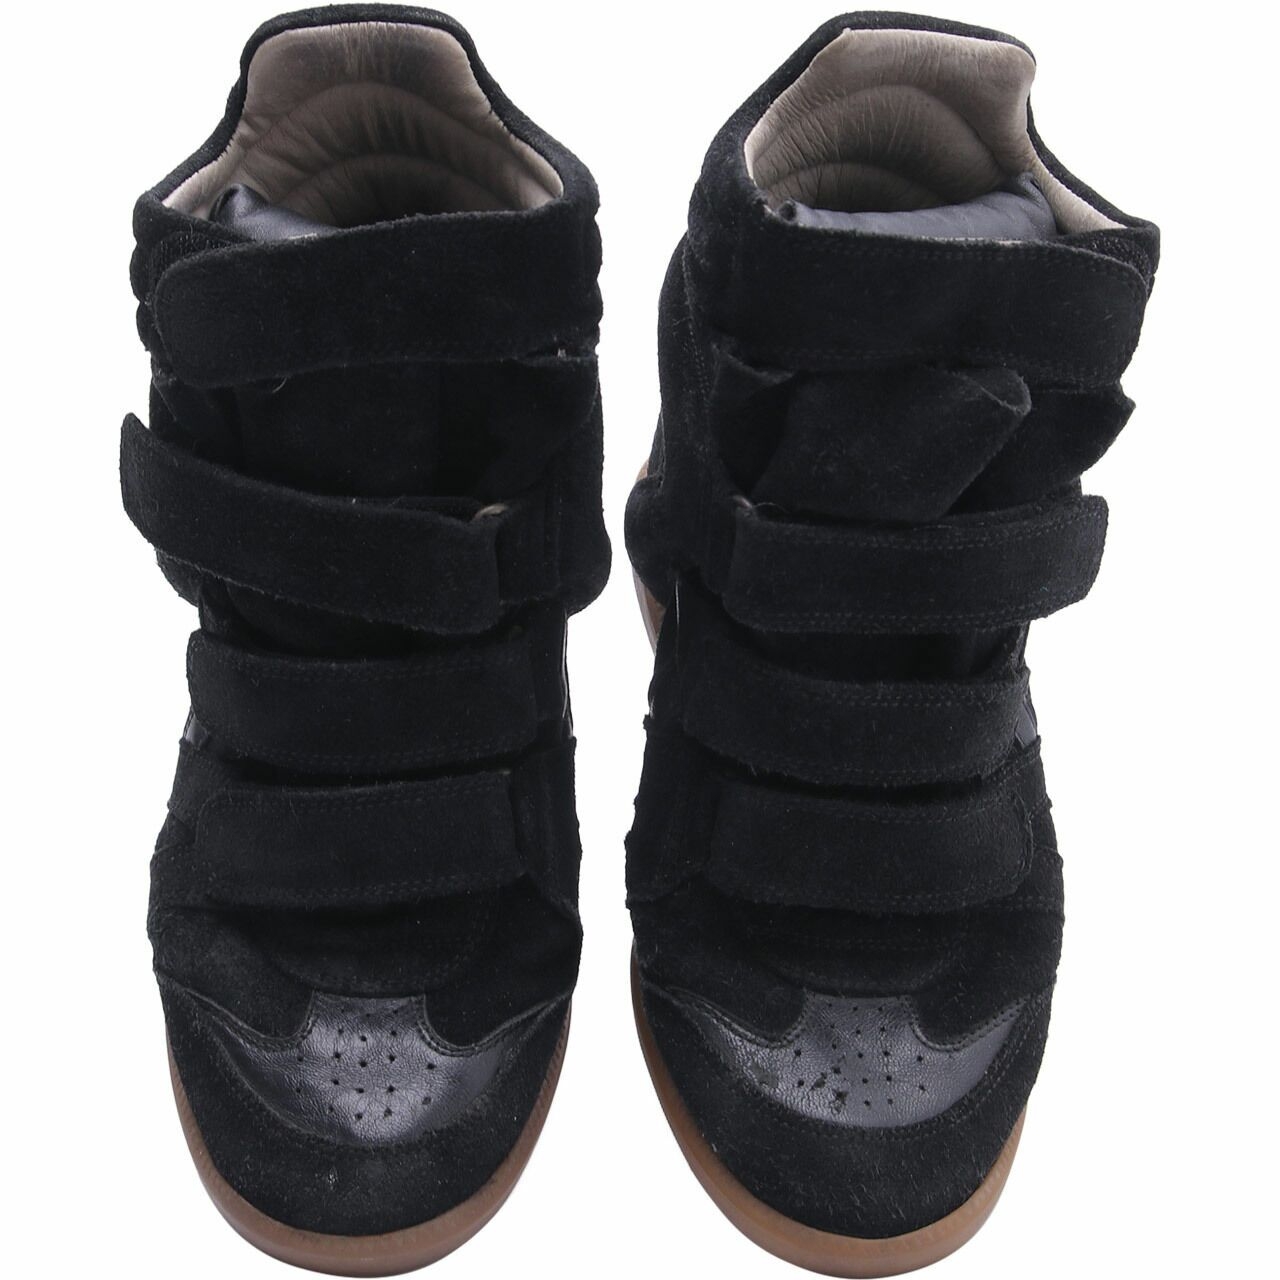 Isabel Marant Black Suede Wedges Sneakers